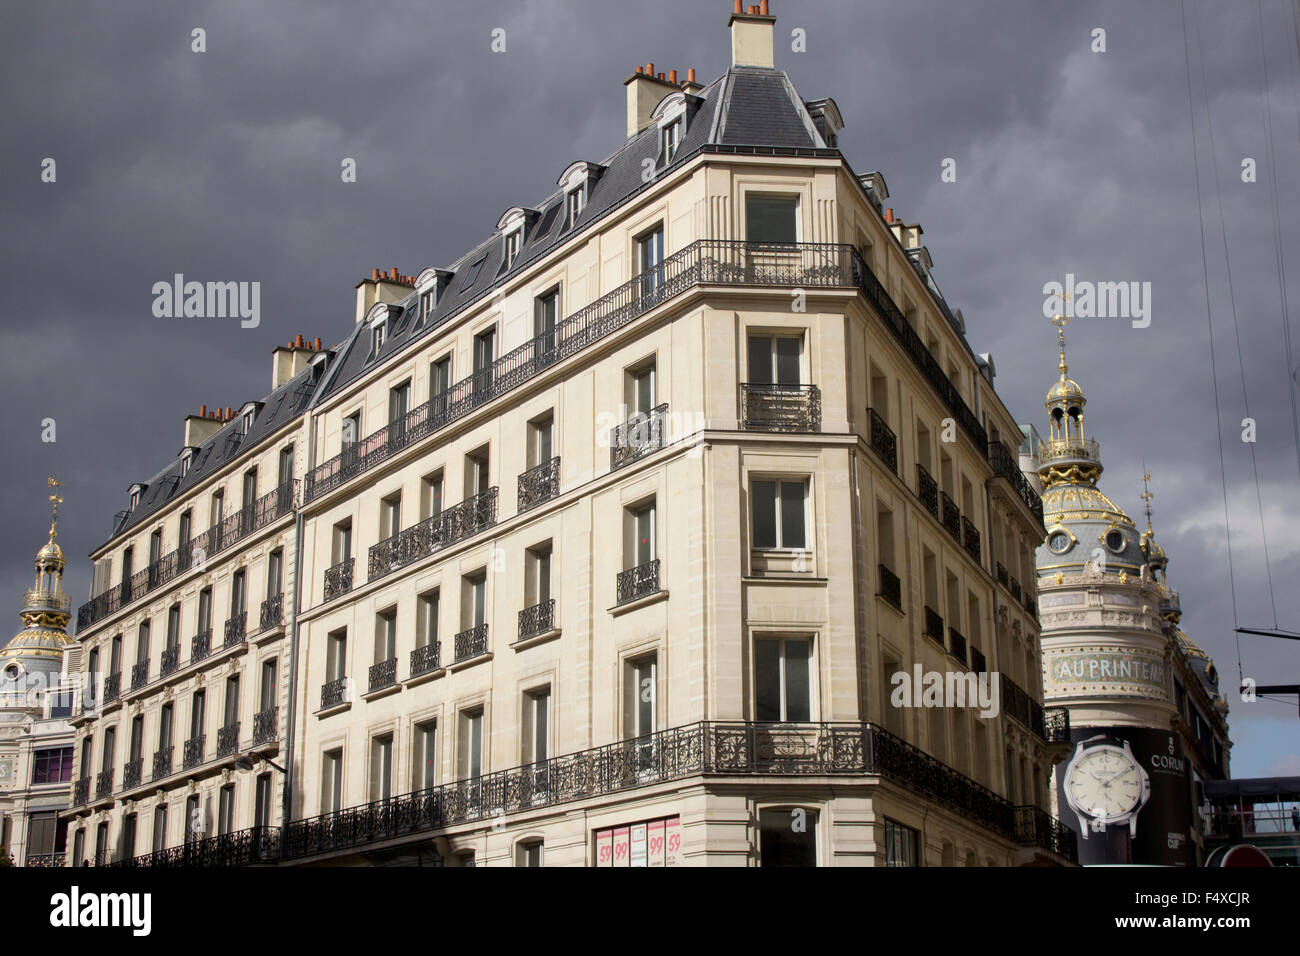 Xix c. Secondo l'architettura imperiale nel quartiere Opera di Parigi, con Au Printemps department store in background. Foto Stock